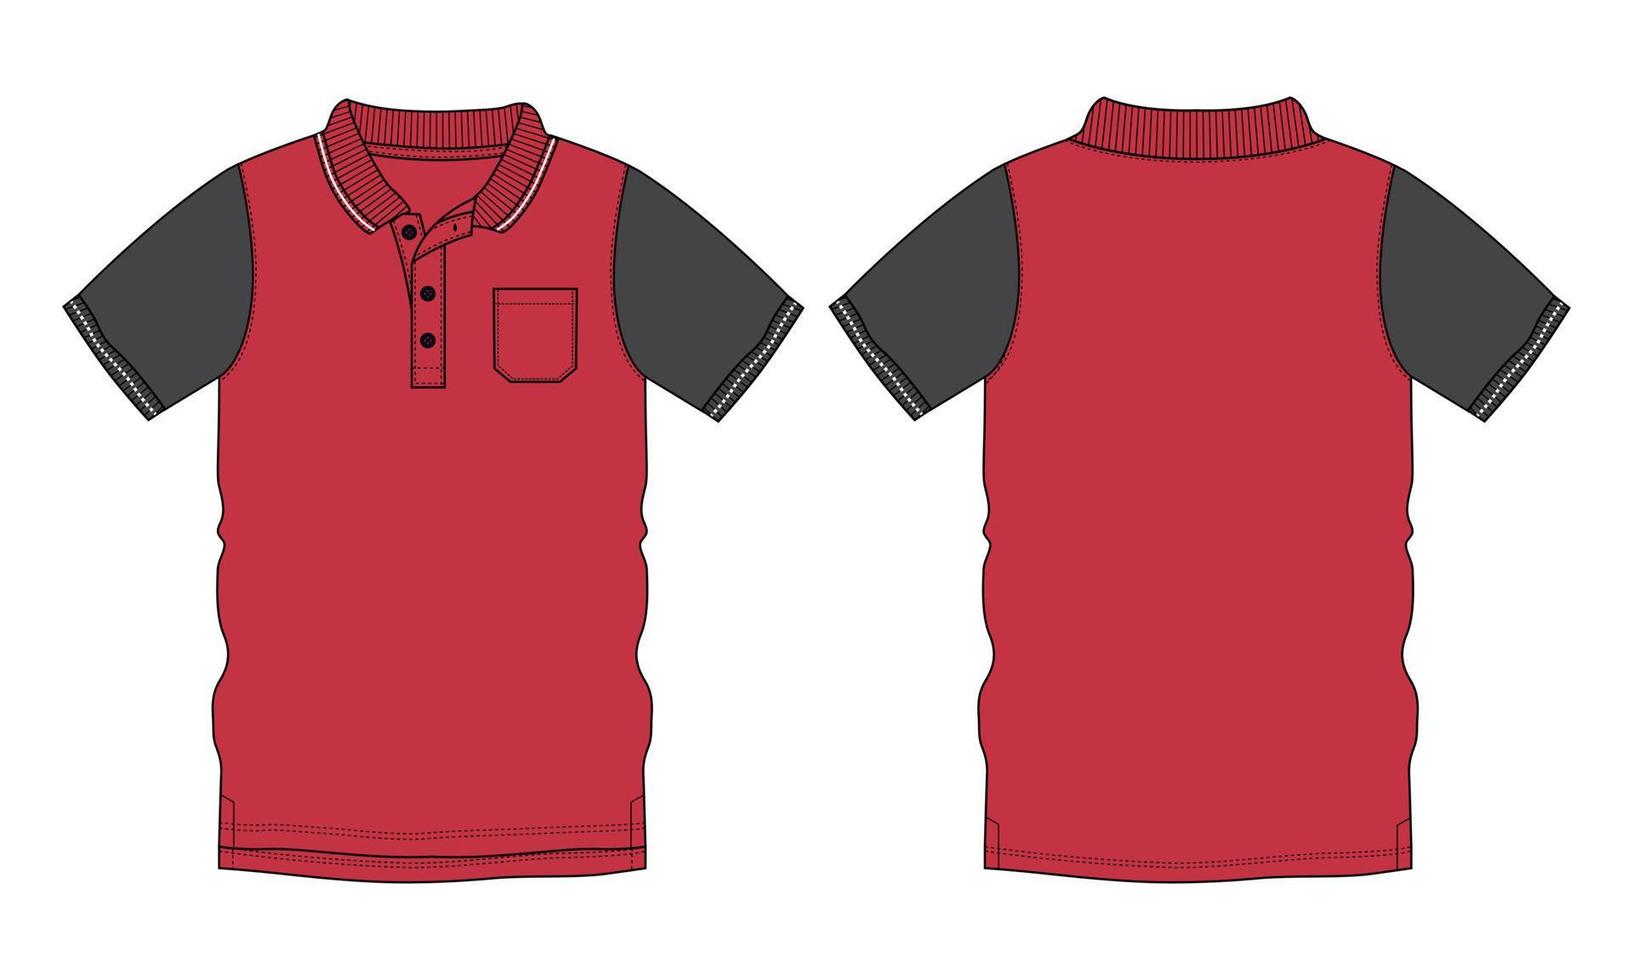 camisa polo de manga curta técnica de moda desenho plano ilustração vetorial modelo de cor vermelha vistas frontal e traseira vetor